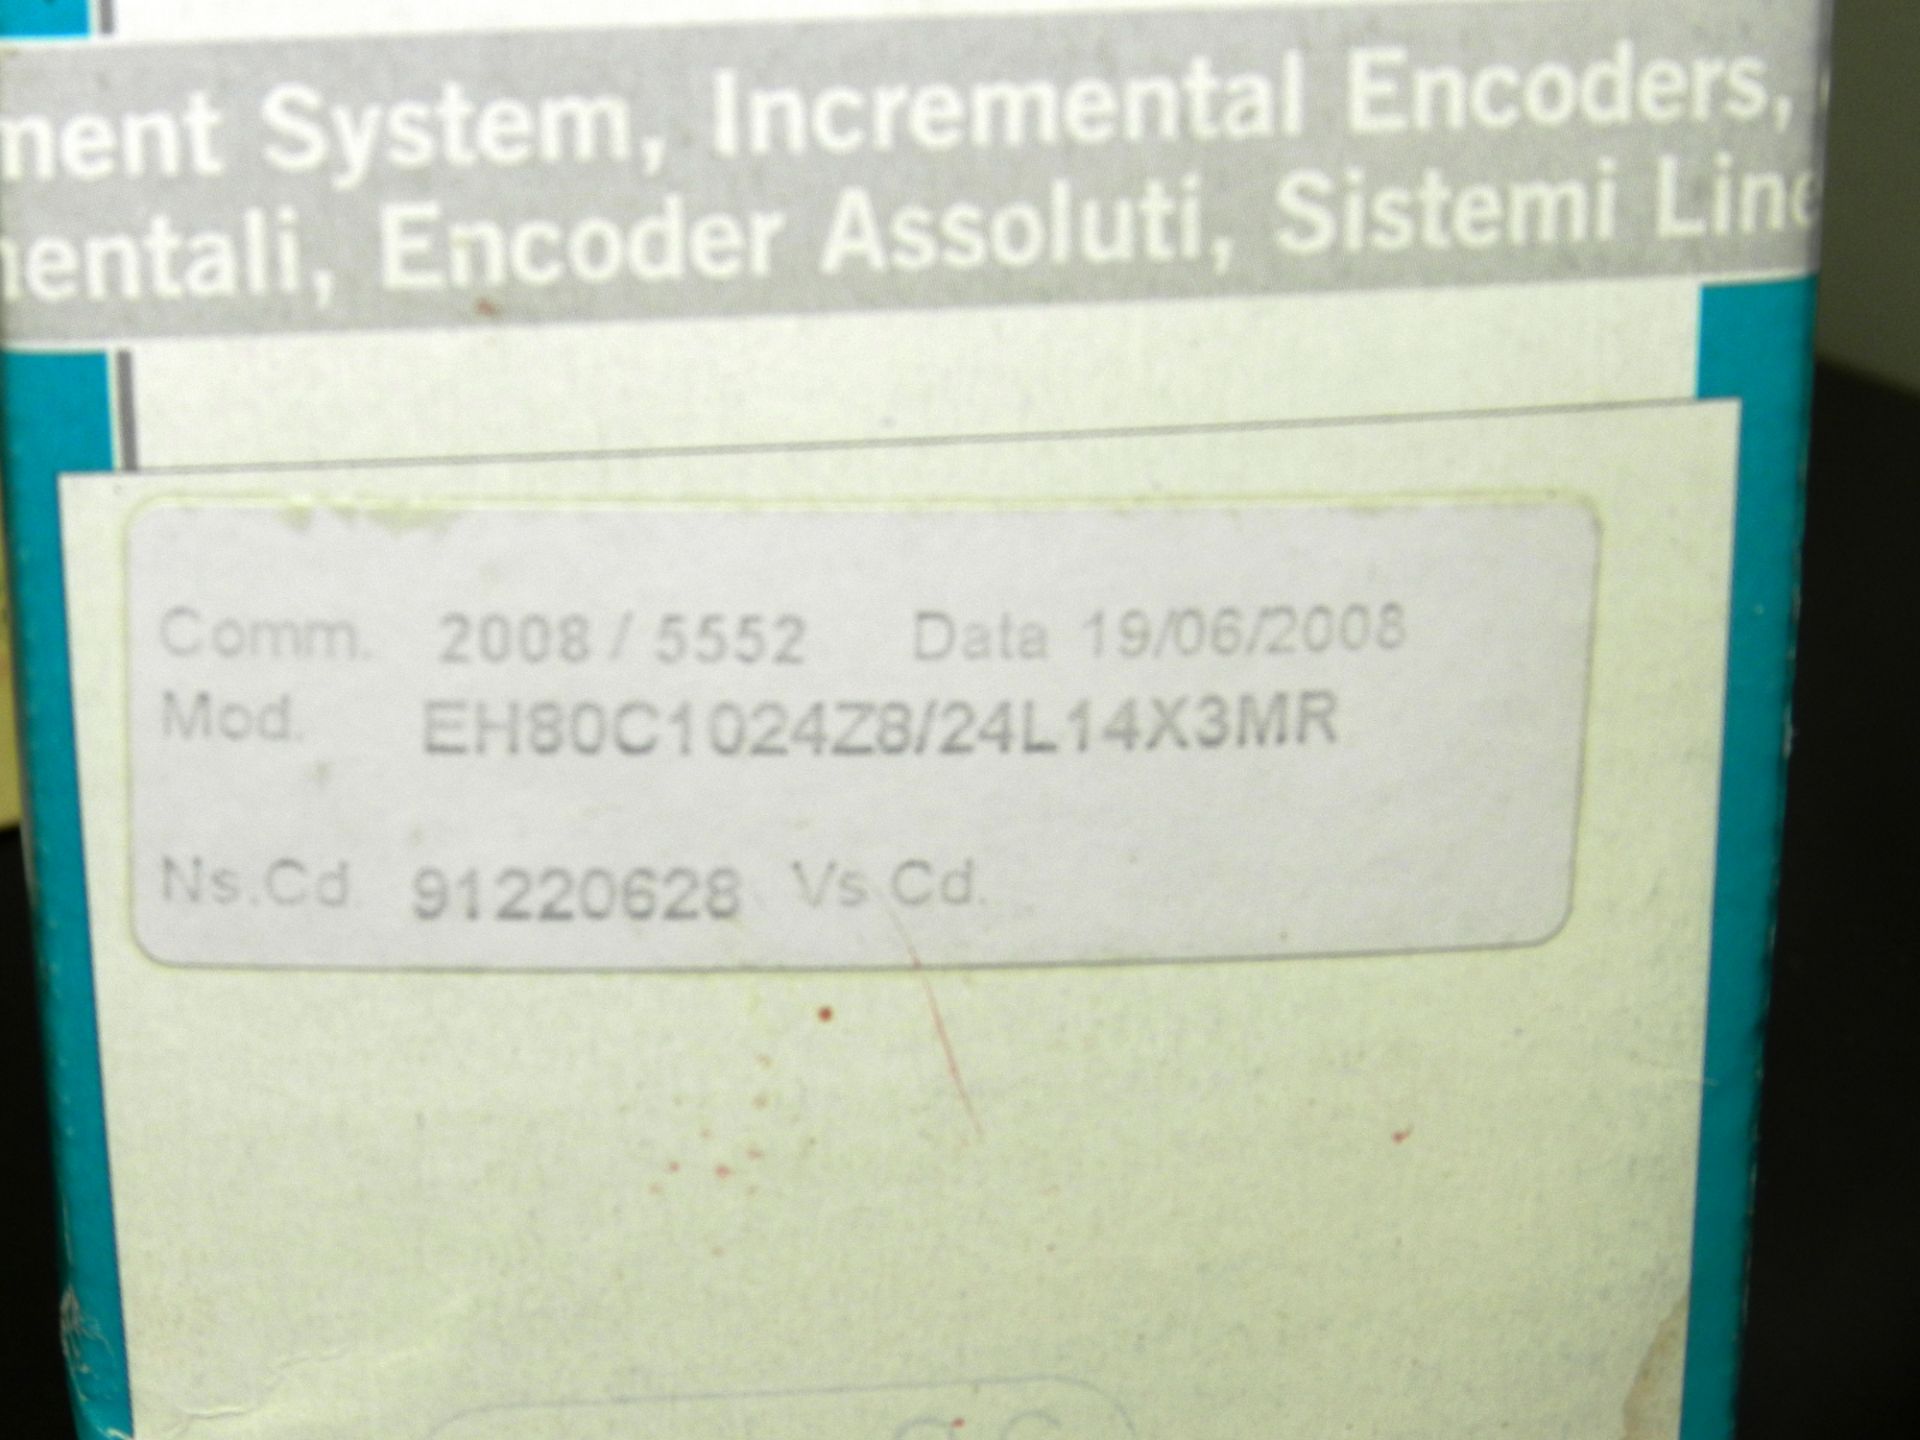 Eltra EH80C1024Z8/24L14X3MR Encoder New - Image 2 of 4